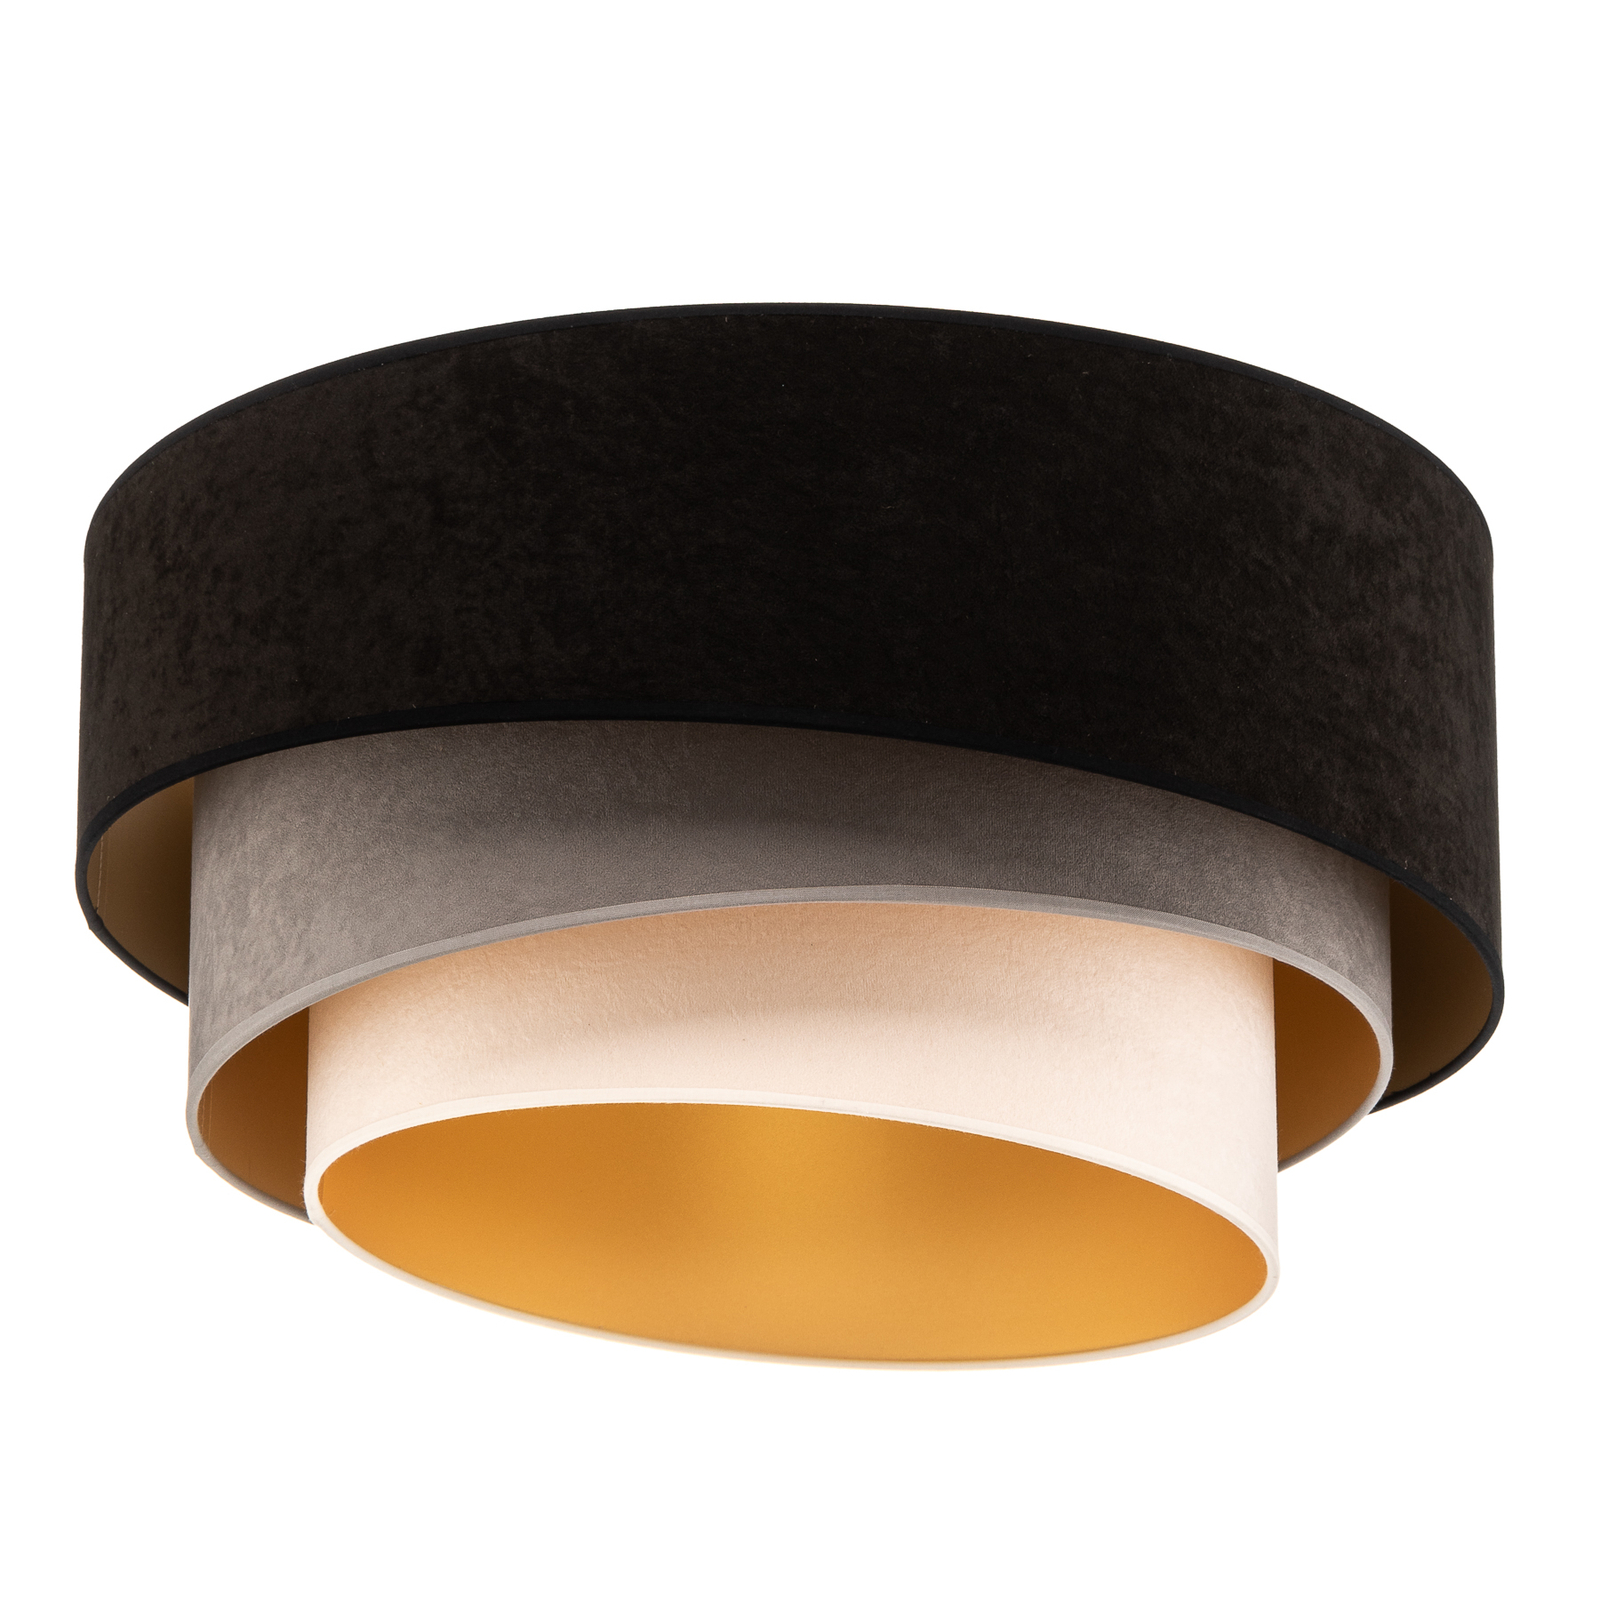 Lampa sufitowa Devon czarna/szara/ecru/złota Ø60cm